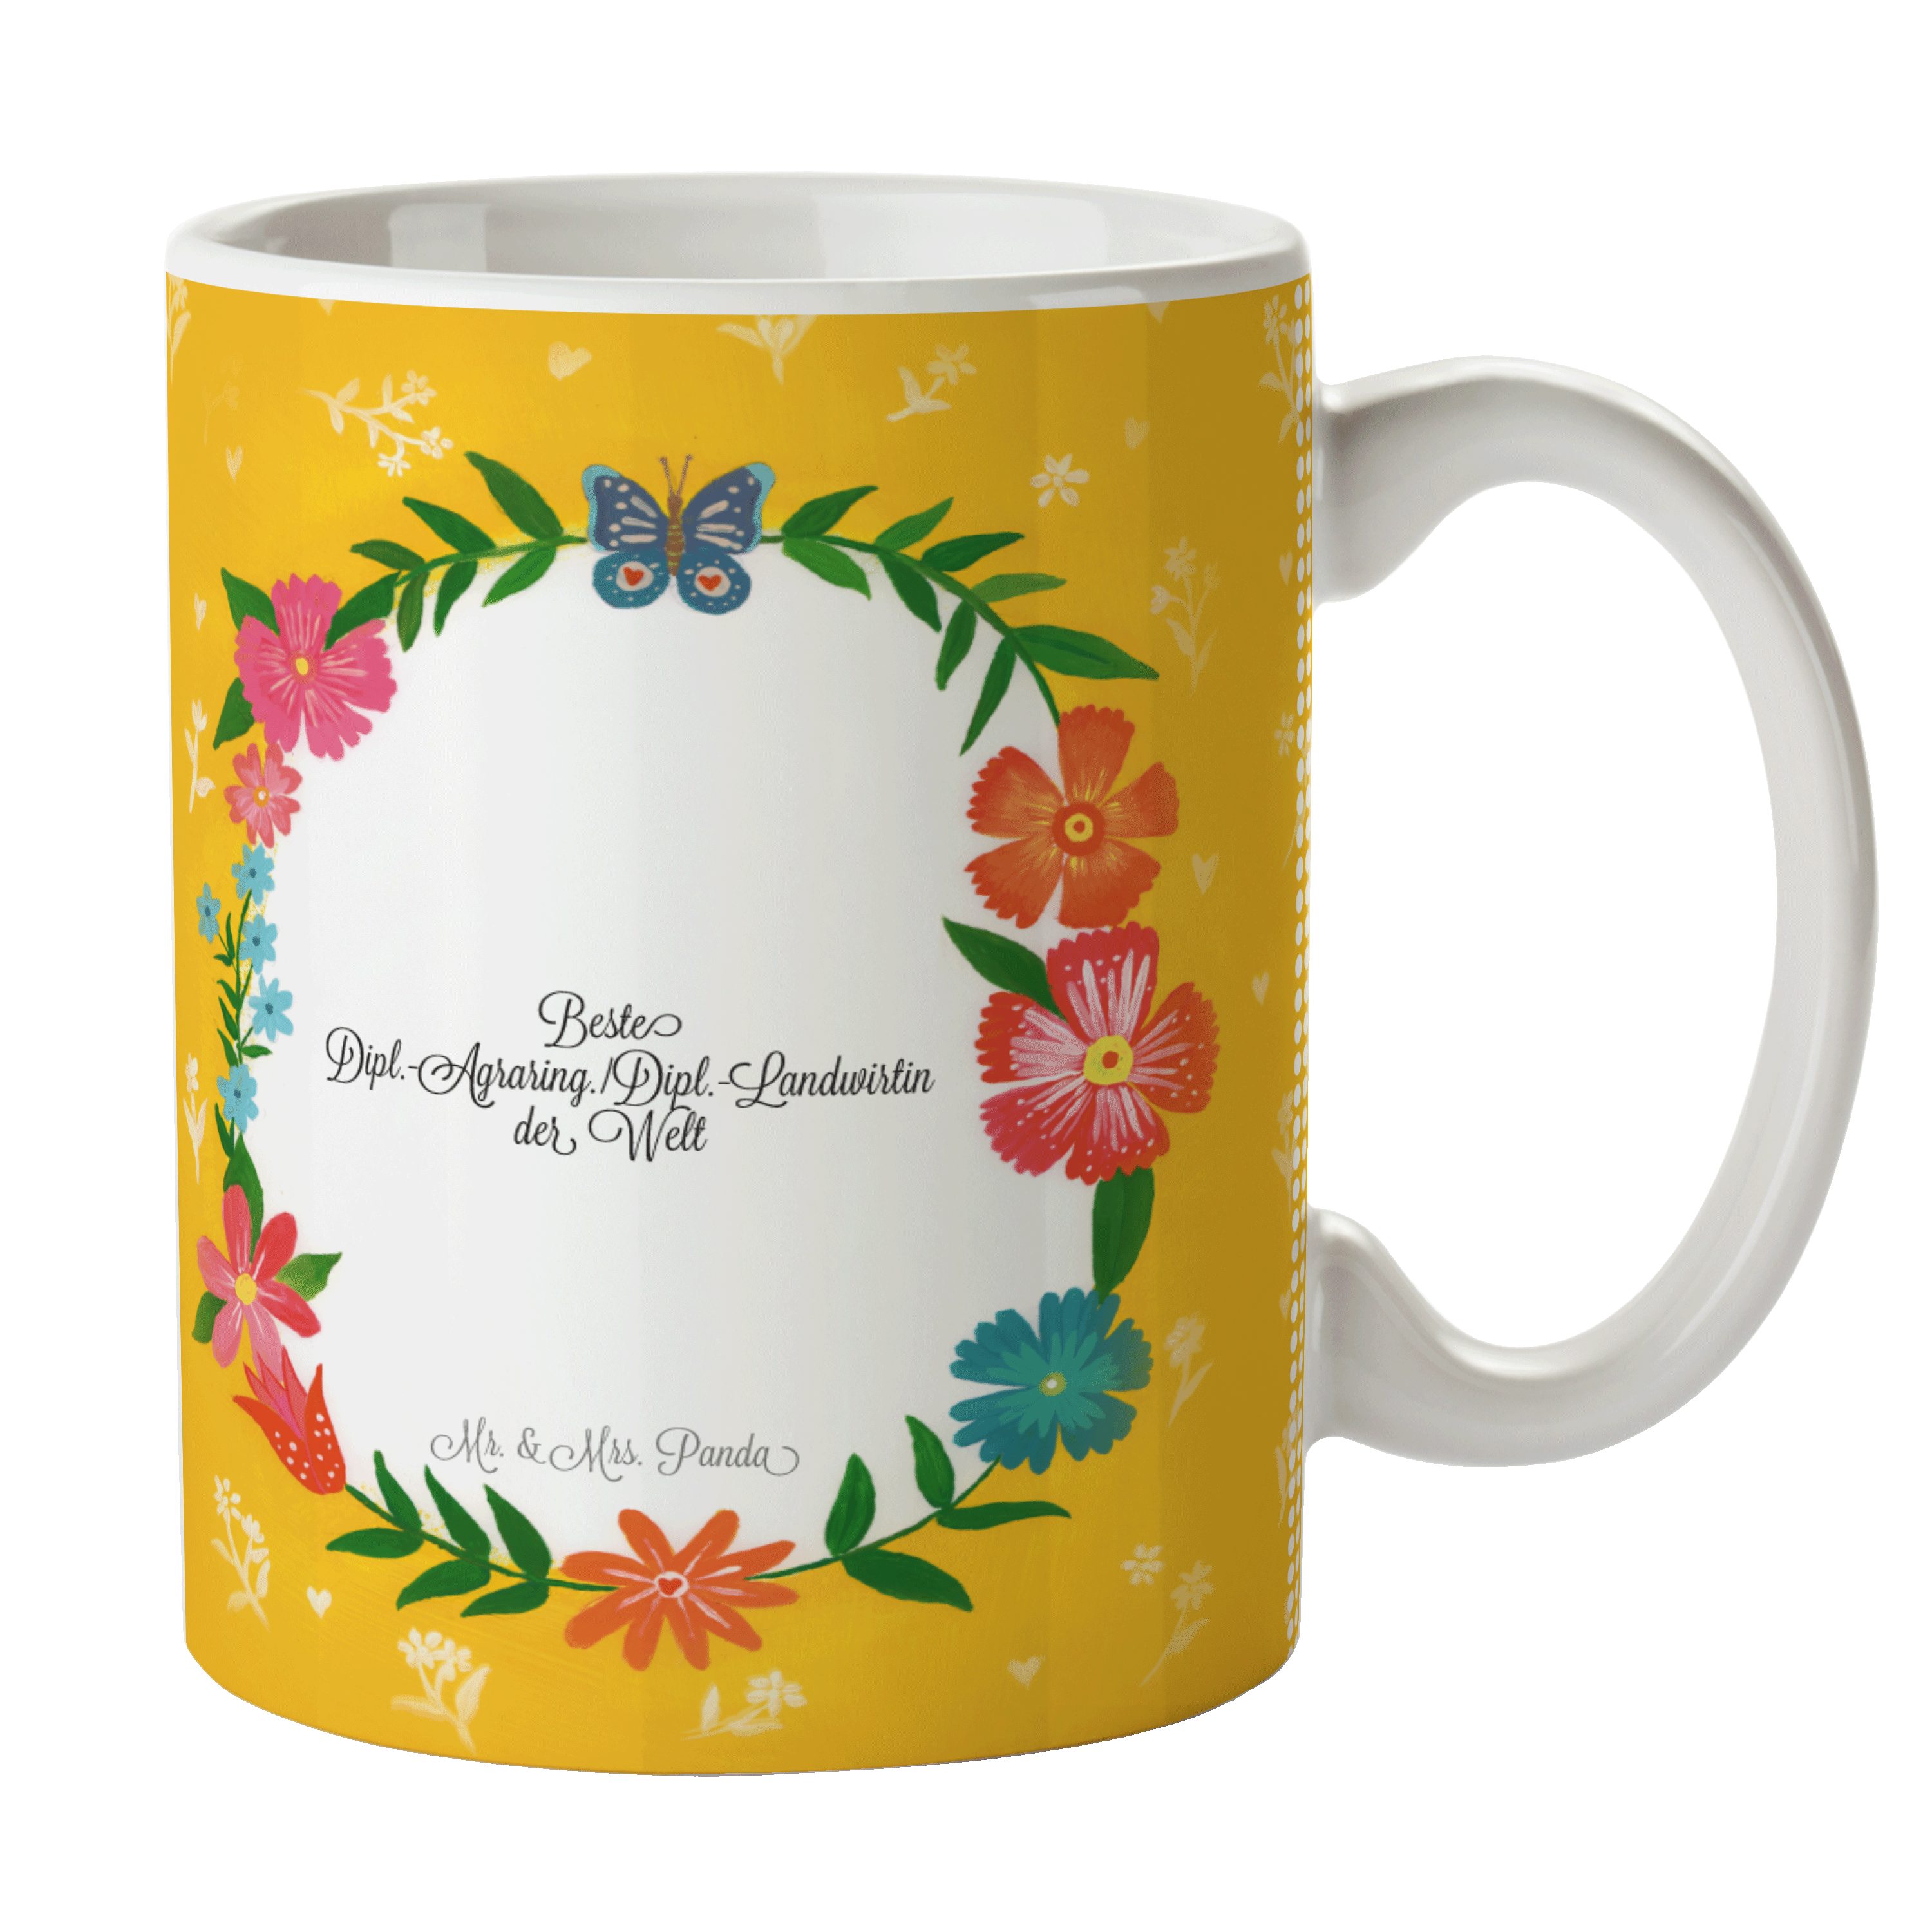 Kaffeetasse, Gratulation, Keramik & Mr. Tasse Geschenk, - Dipl.-Agraring./Dipl.-Landwirtin Mrs. Panda